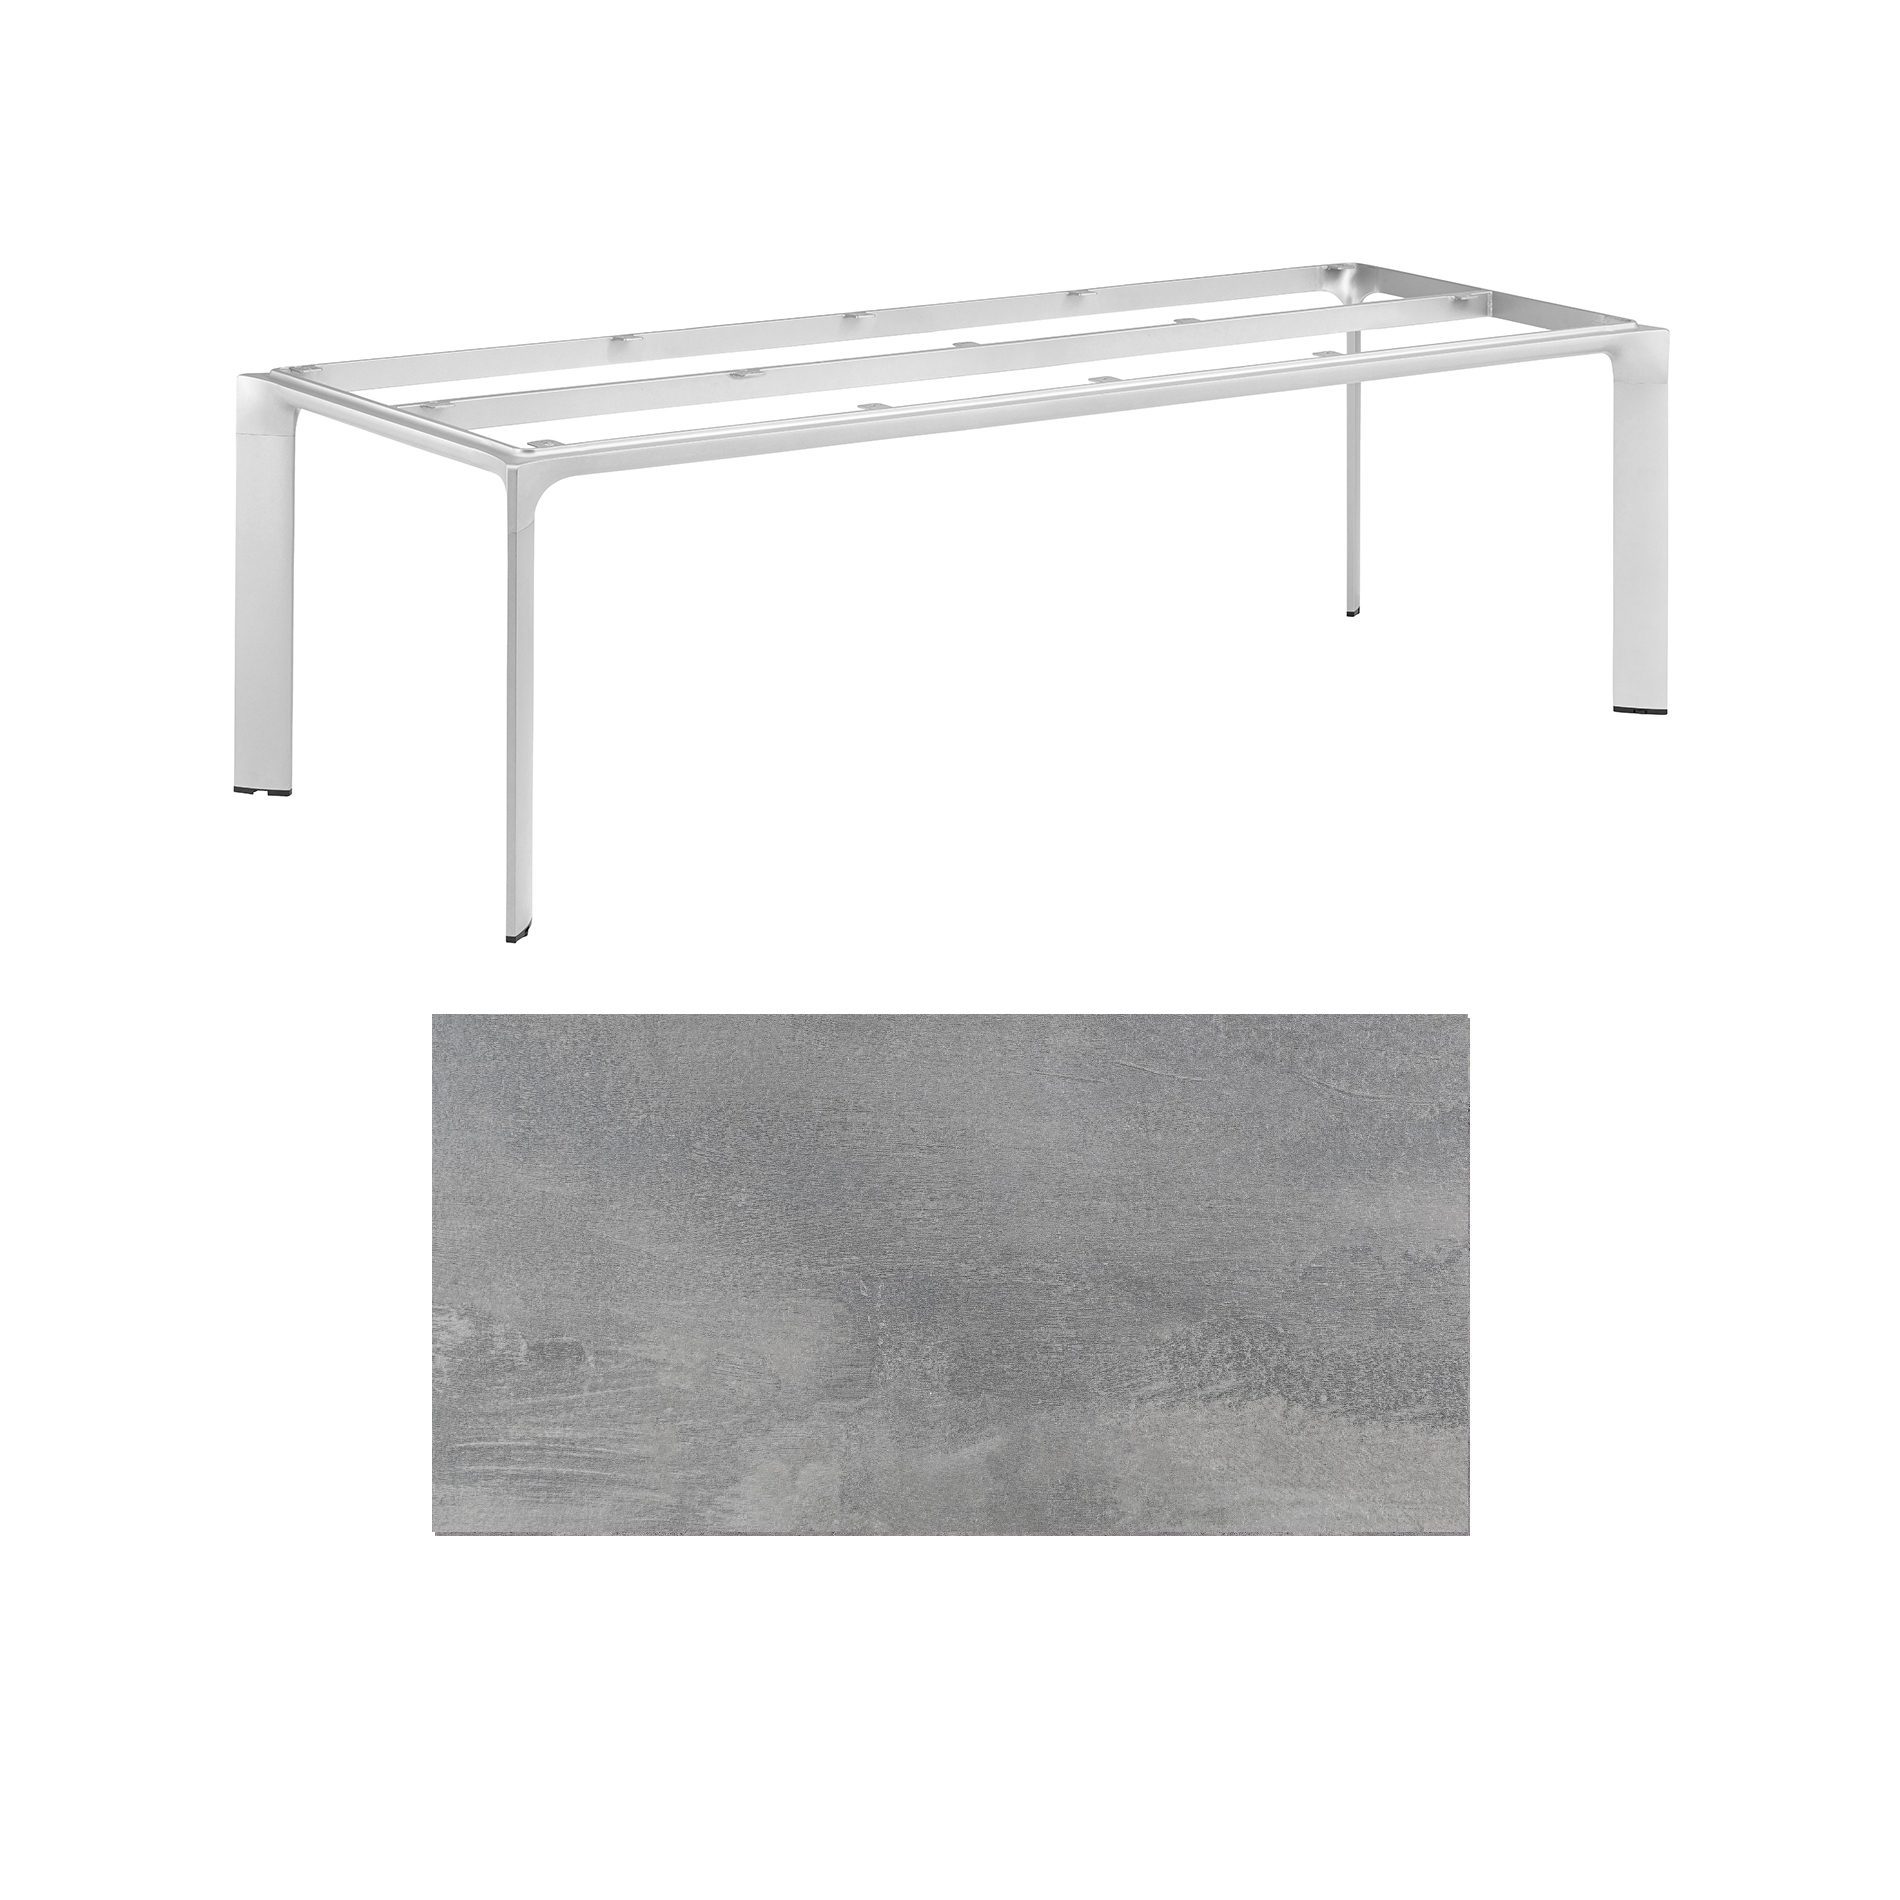 Kettler "Diamond" Tischsystem Gartentisch, Gestell Aluminium silber, Tischplatte HPL silber-grau, 220x95 cm